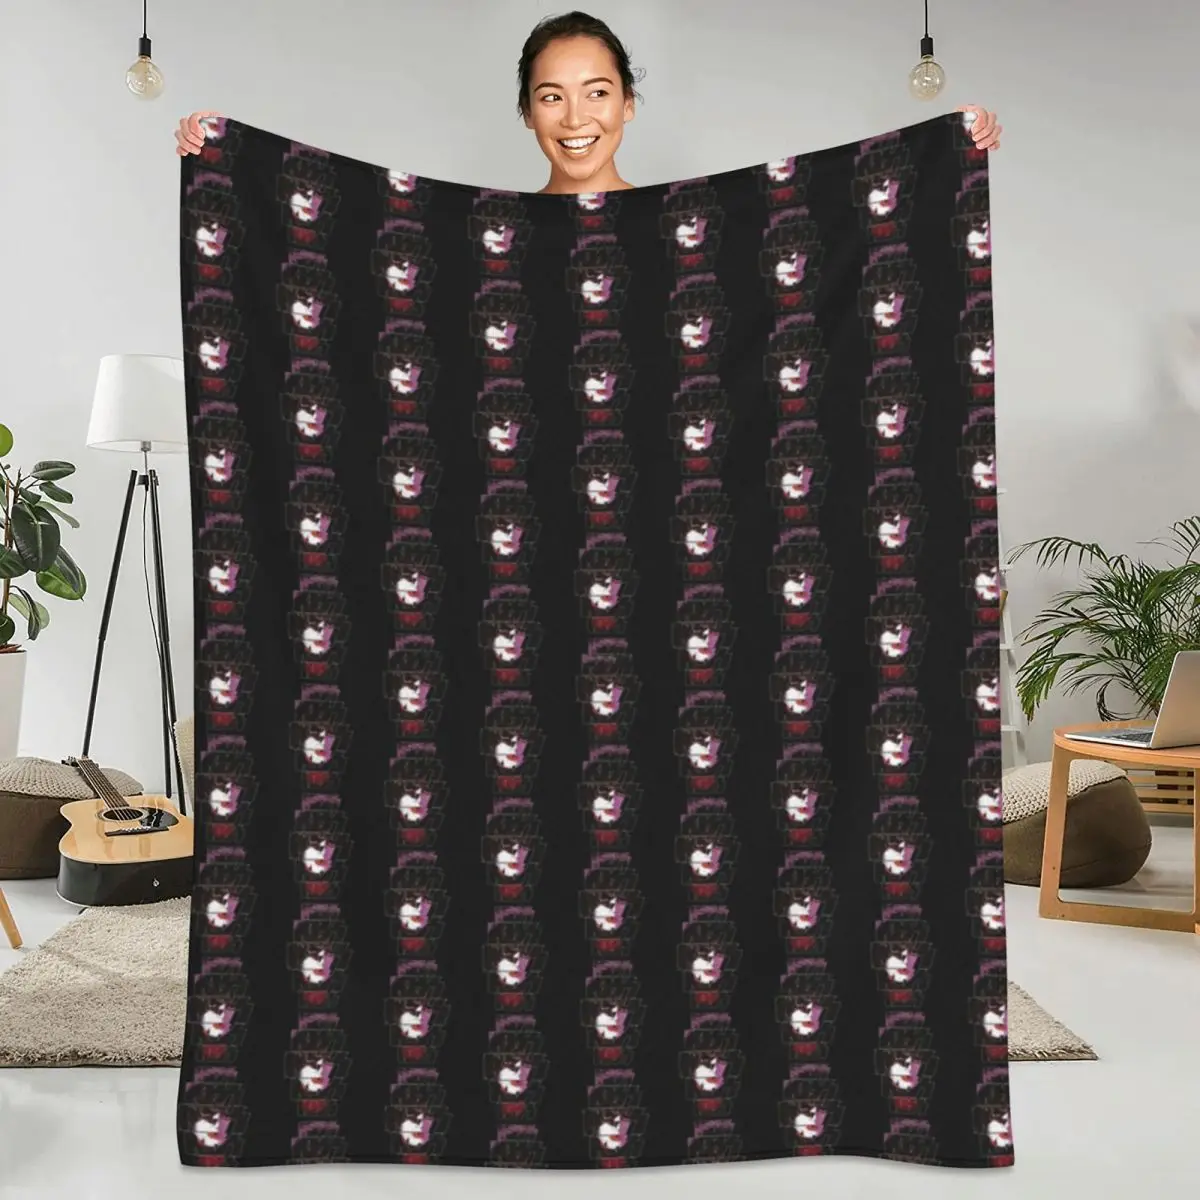 

Фланелевые одеяла Kiss Band, Качественные теплые мягкие одеяла с логотипом Starchild, зимние одеяла для кемпинга и походов